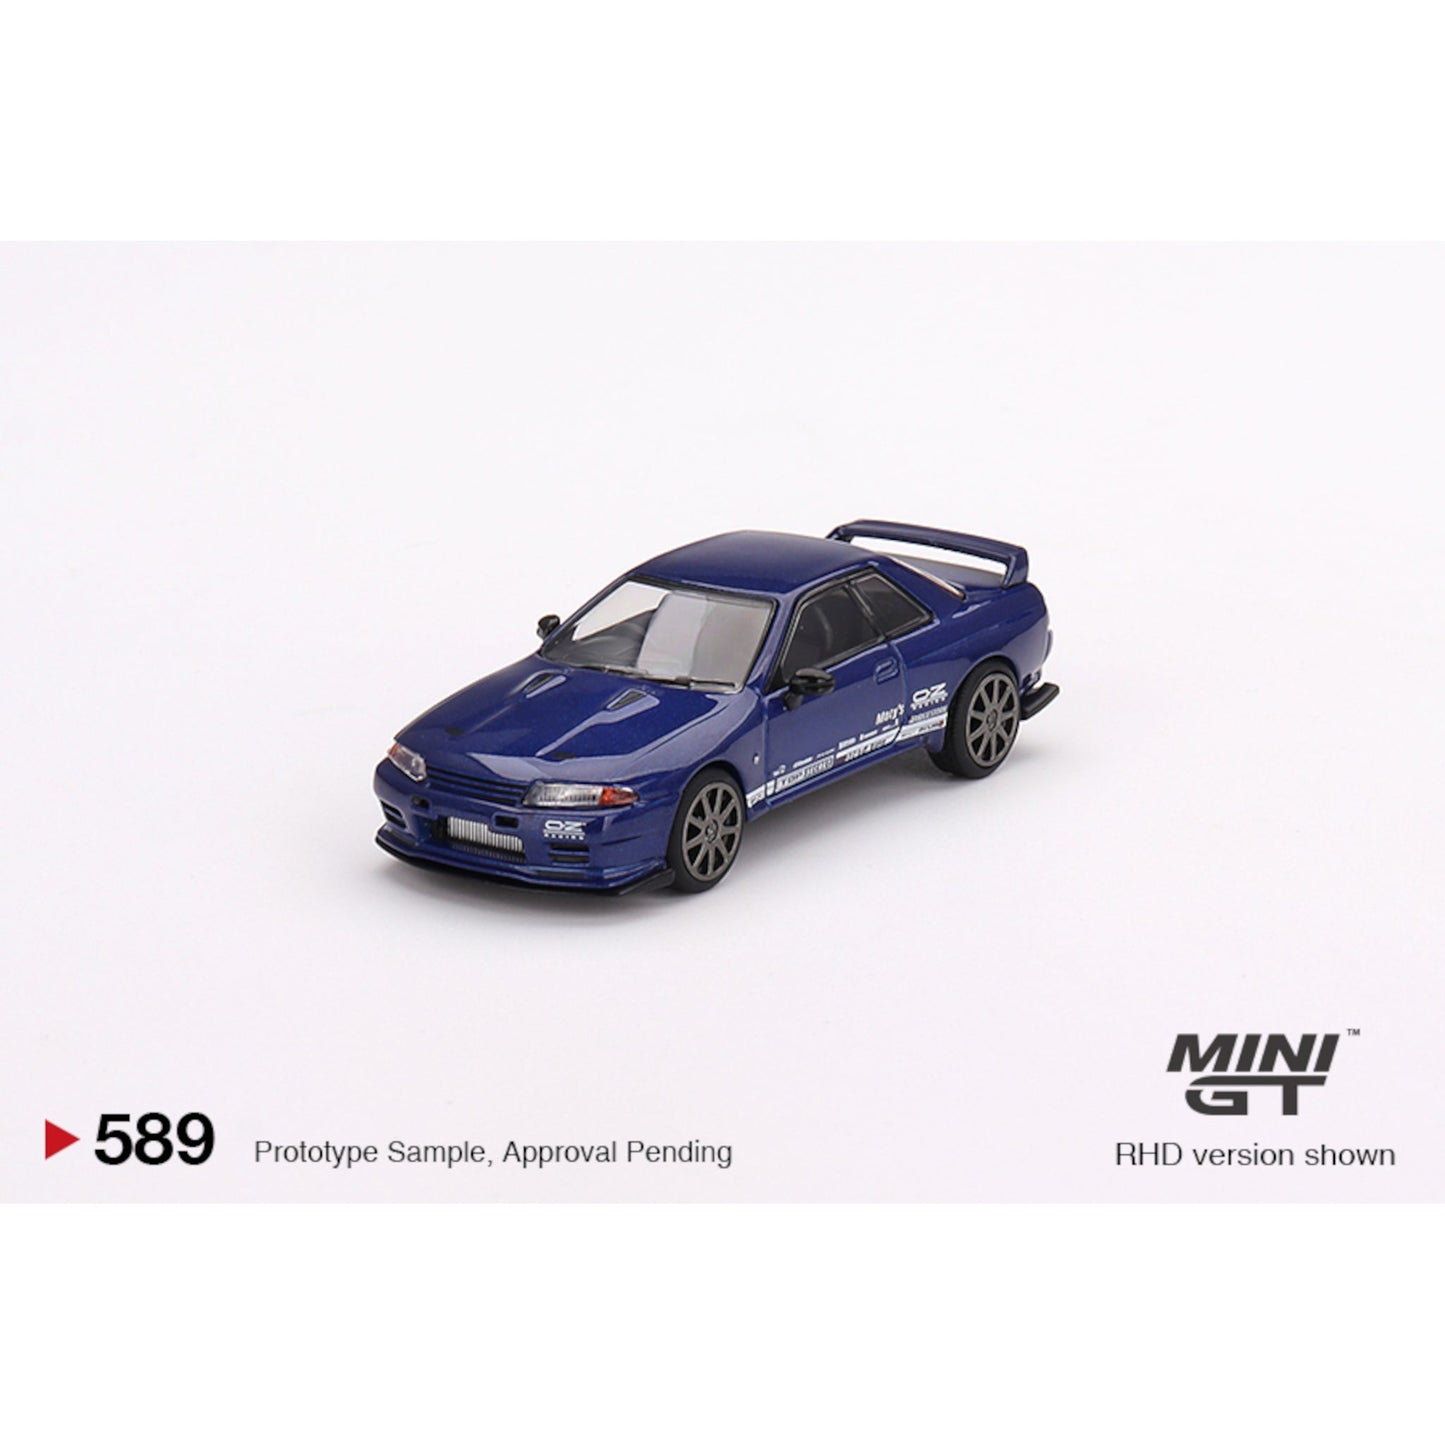 Nissan Skyline GT - R Top Secret VR32 Metallic Blue RHD Mini GT 1/64 - MGT00589 - R